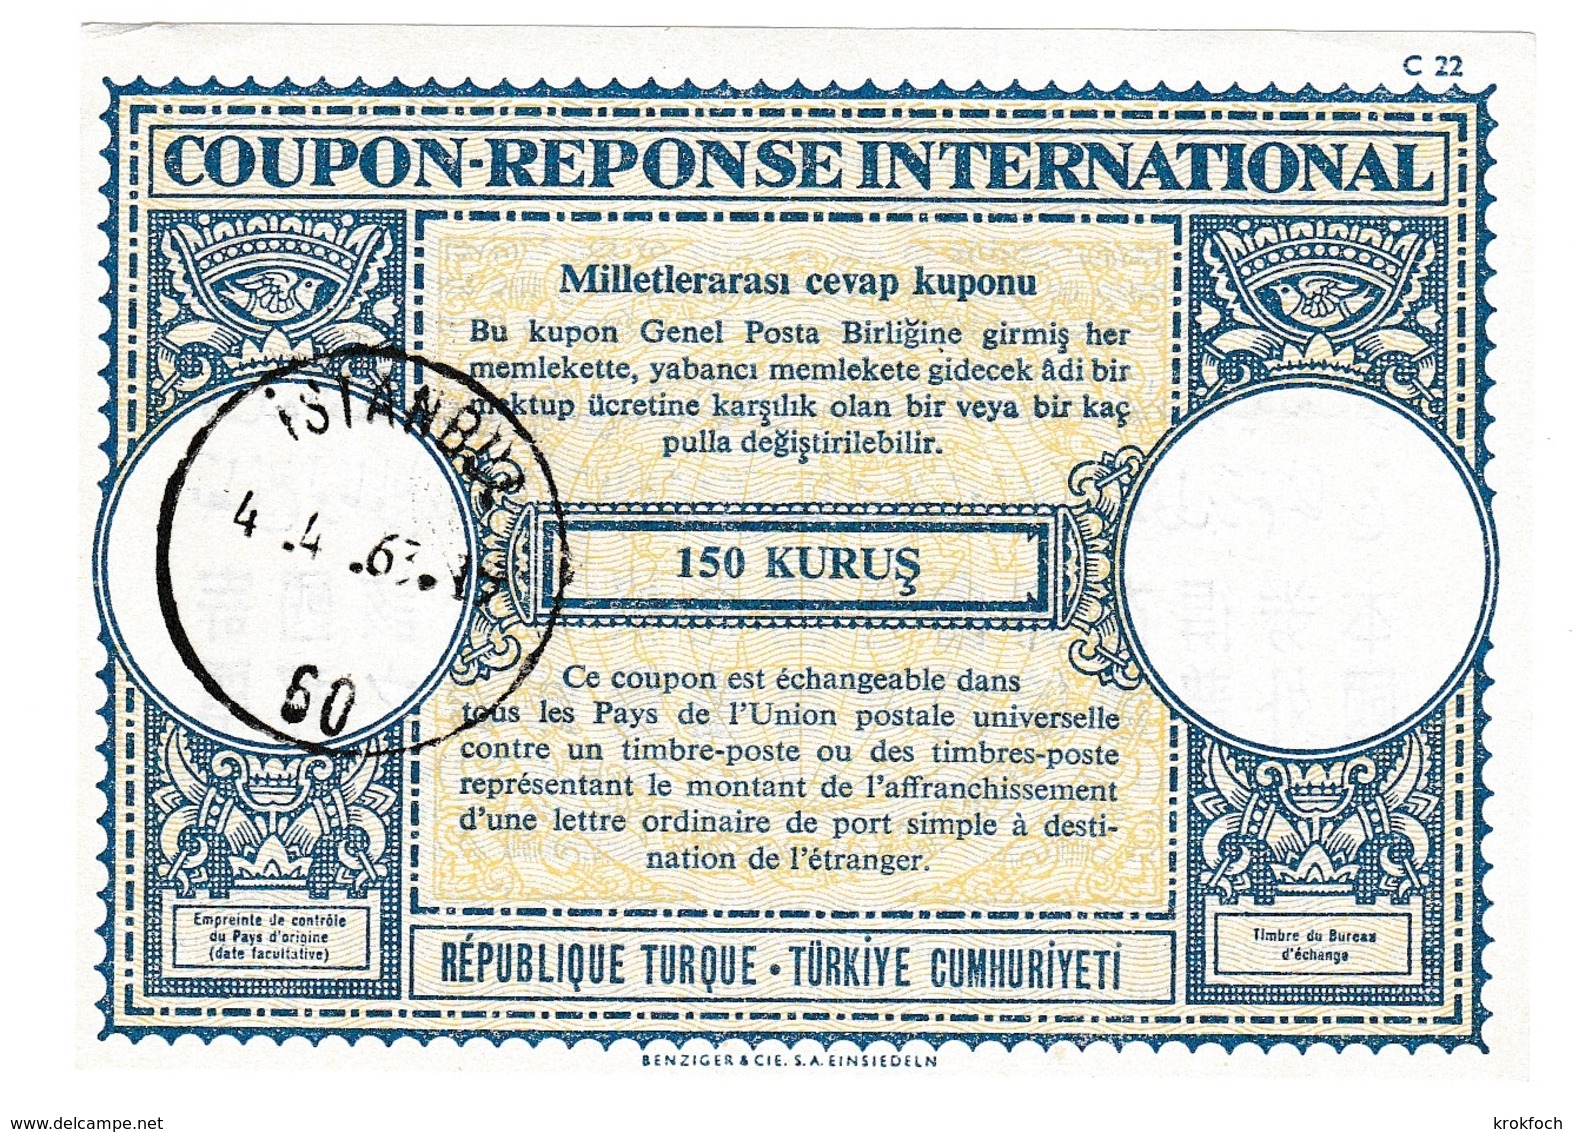 Coupon-réponse 150 Kurus - Istanbul 1963 - C 22 - Turquie Turkiye - IRC CRI IAS - Postal Stationery